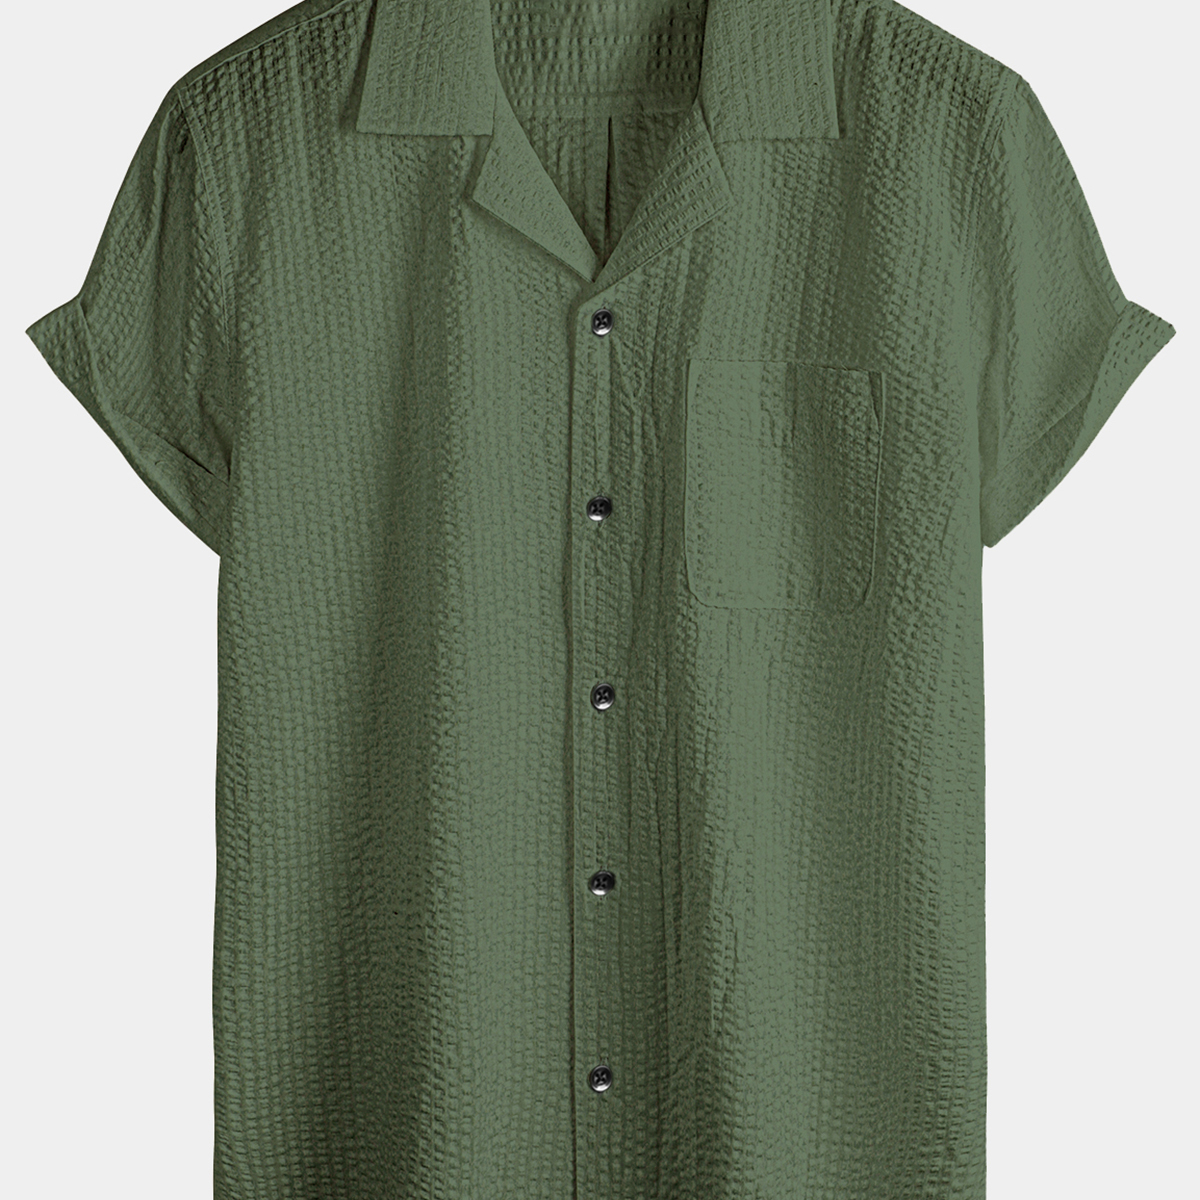 Men's Summer Casual Button Up 100% Cotton Short Sleeve Beach Hawaiian Shirt